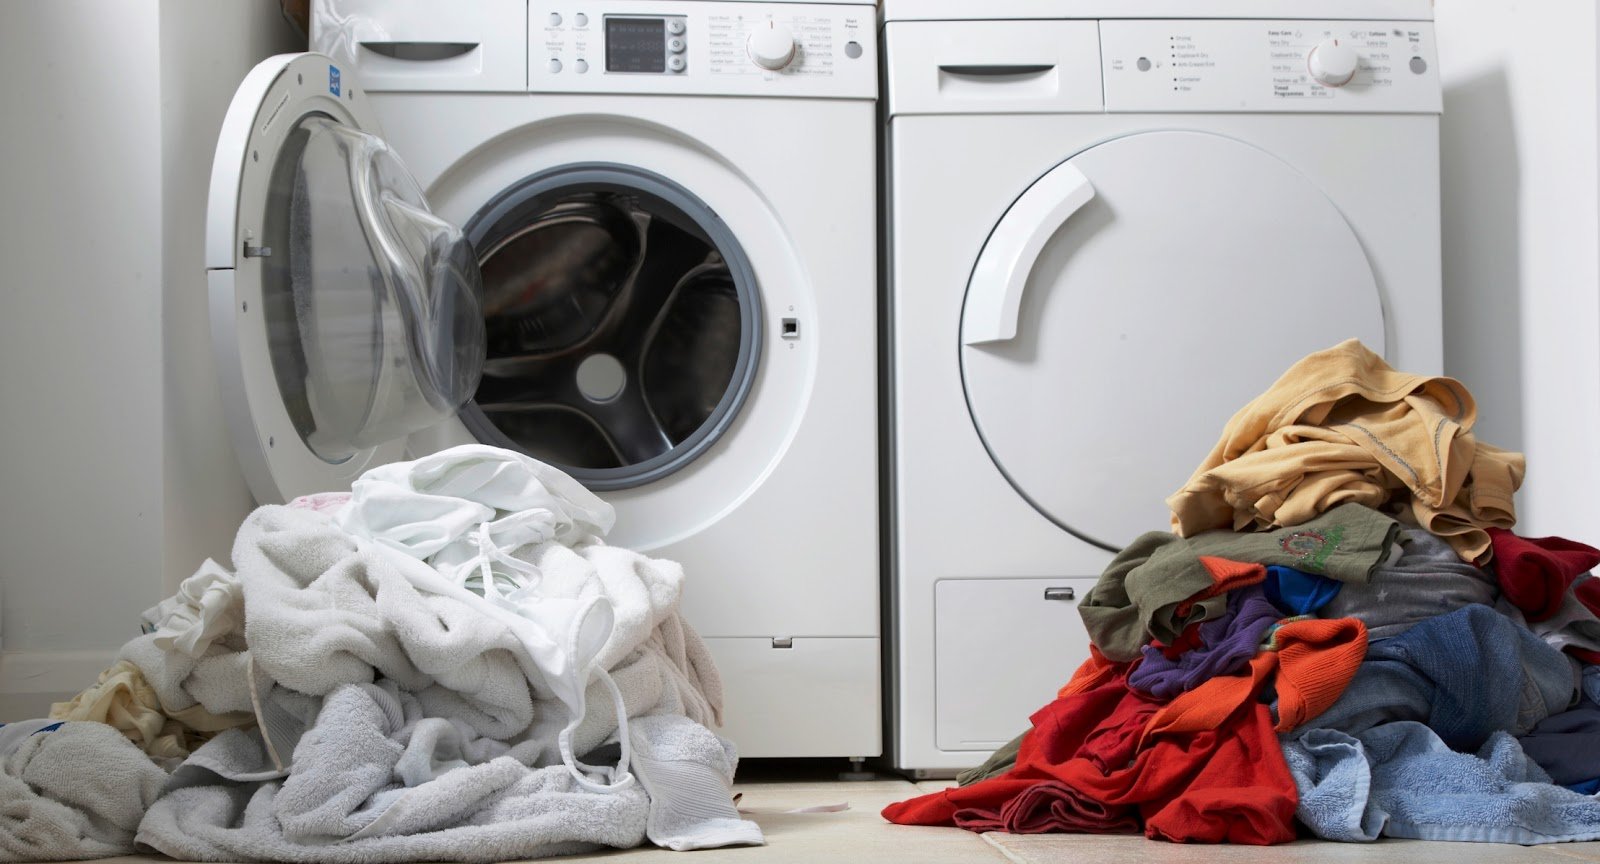 áo dài phi bóng và áo dài nữ sinh được sử dụng máy giặt